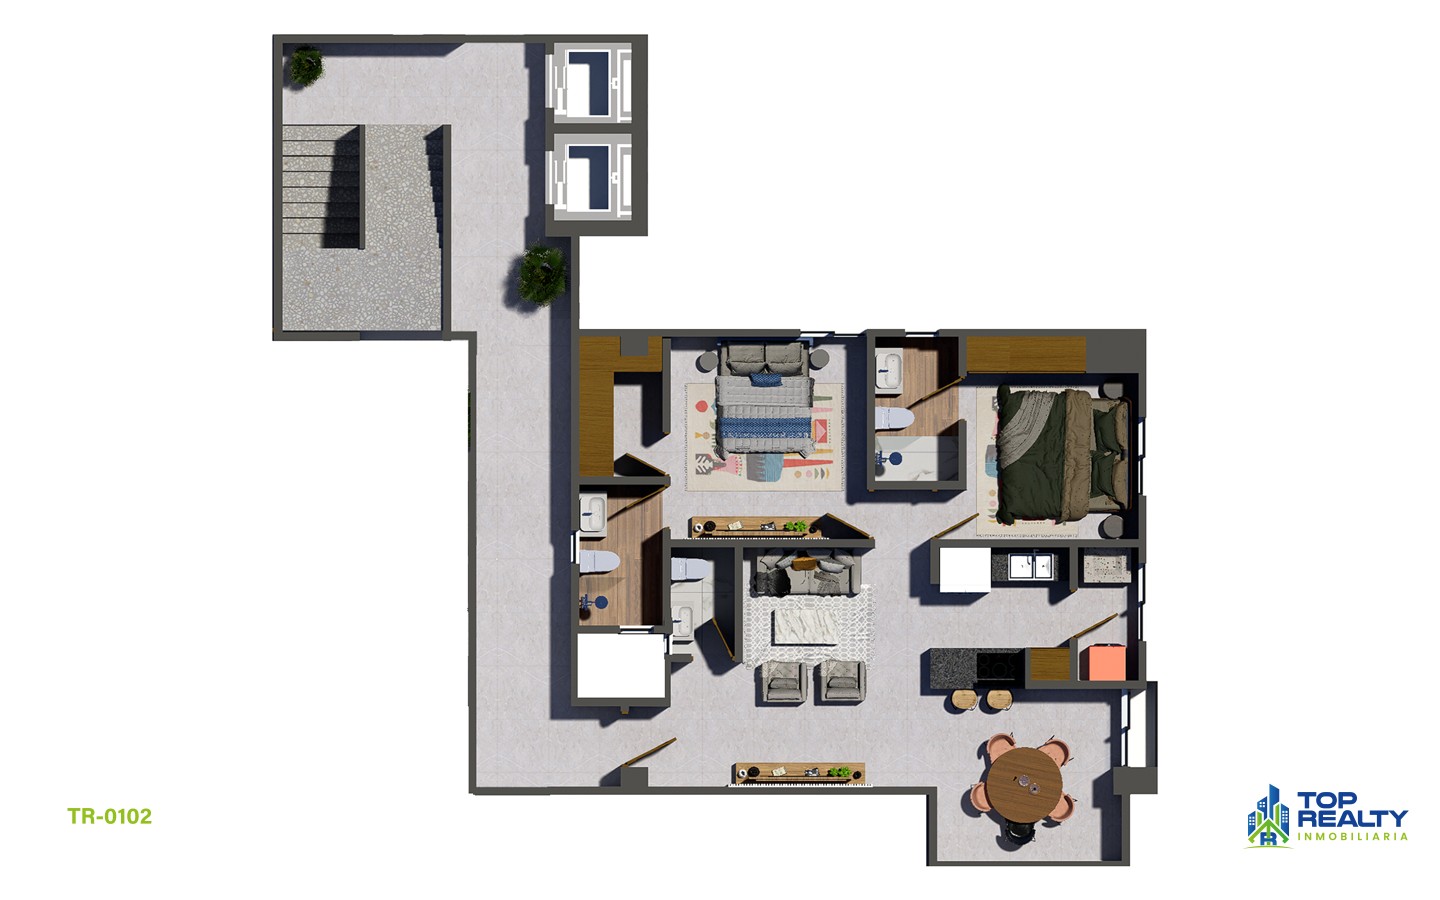 apartamentos - TR-0102-B Estilo y Comodidad: Residencias 2 Hab. con Amenidades Premium 5